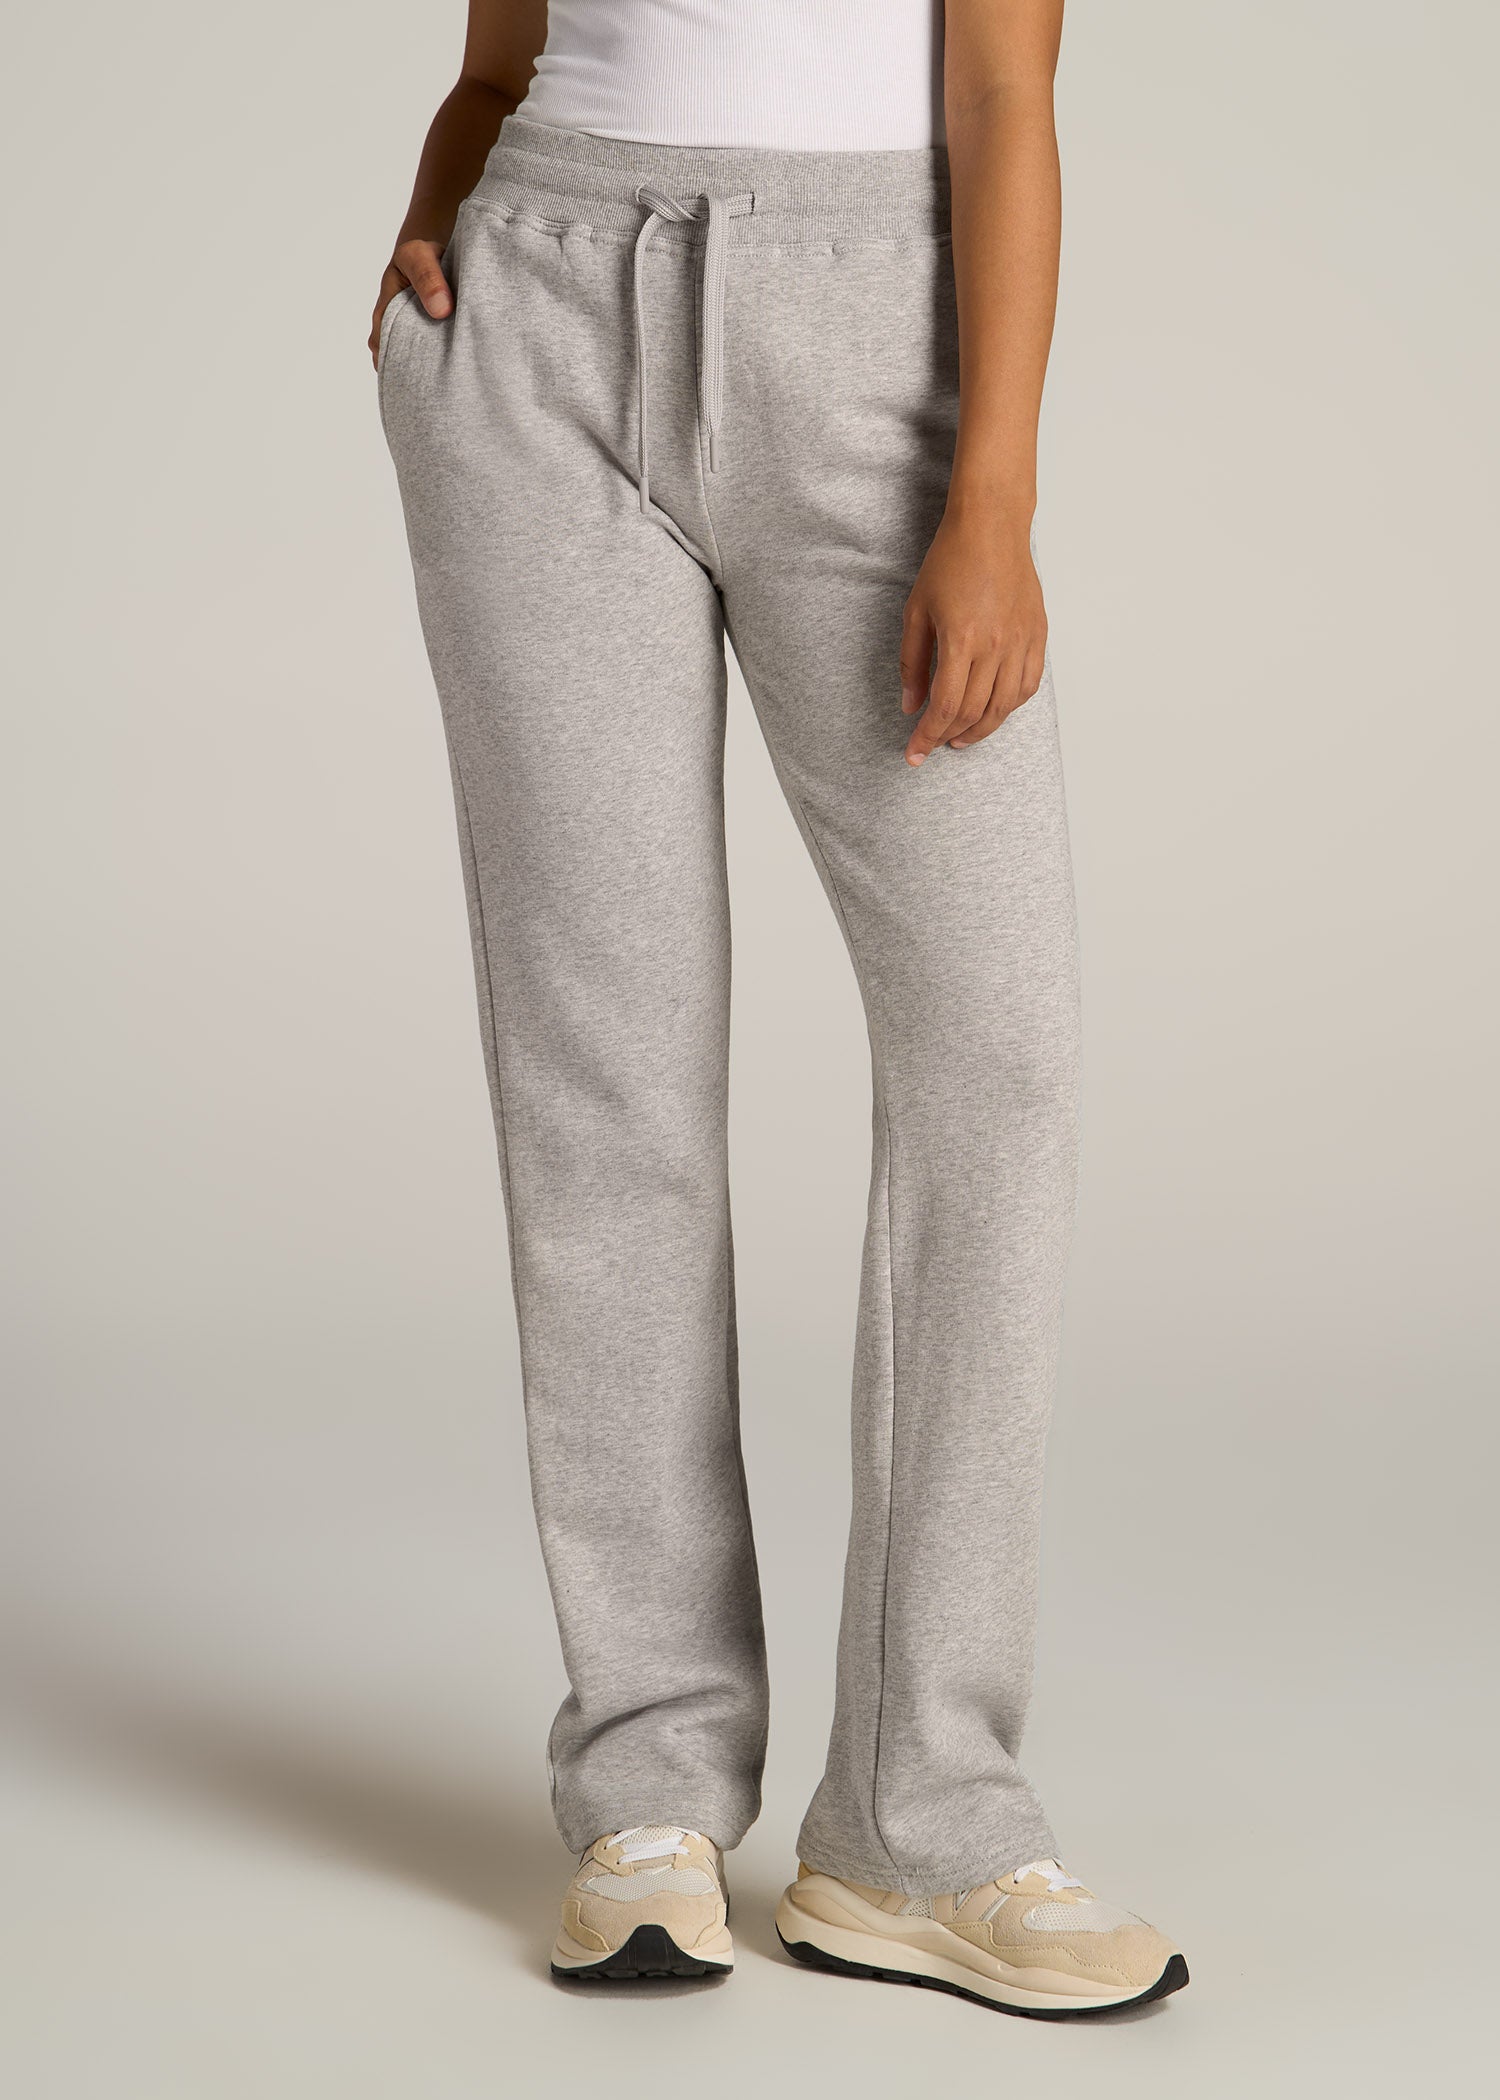 Wearever Fleece Open-Bottom Sweatpants for Tall Women in Charcoal Mix